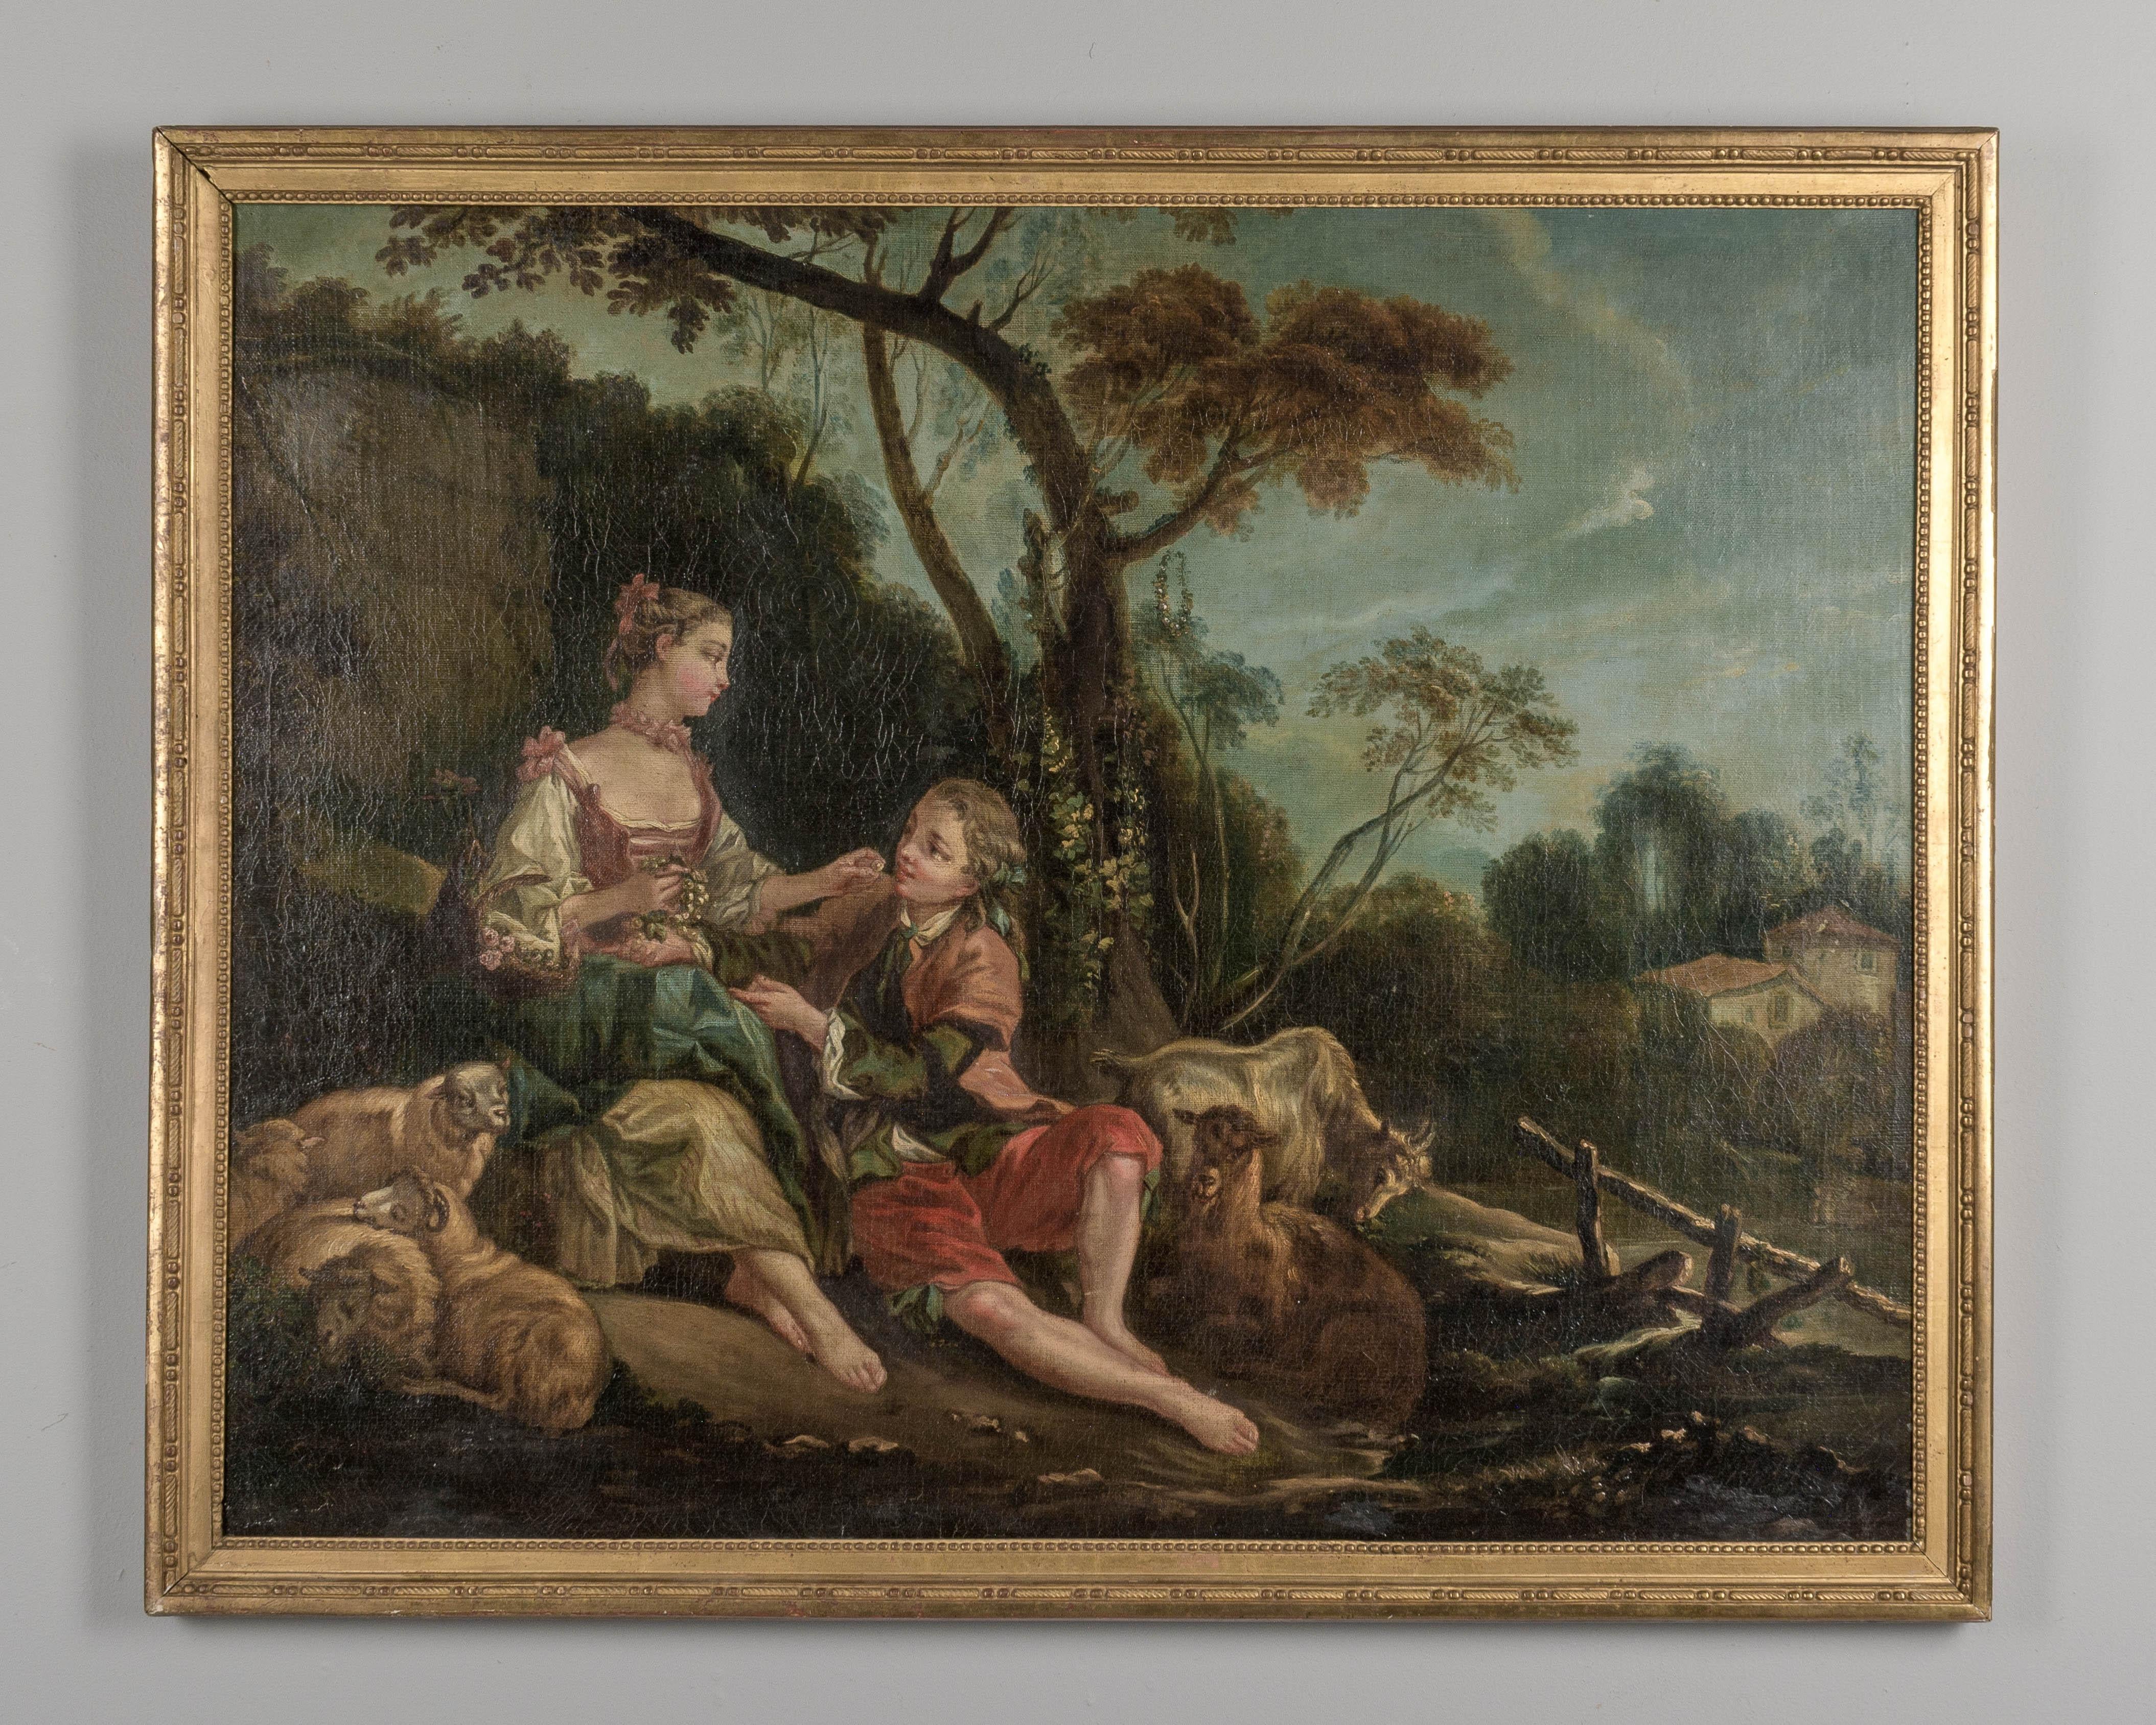 Ein französisches Gemälde aus dem späten 18. Jahrhundert, das ein romantisches Paar in einer pastoralen Umgebung darstellt. Öl auf Leinwand. Nicht signiert. Originaler vergoldeter Holzrahmen. Kleine Reparatur an der Leinwand in der linken oberen